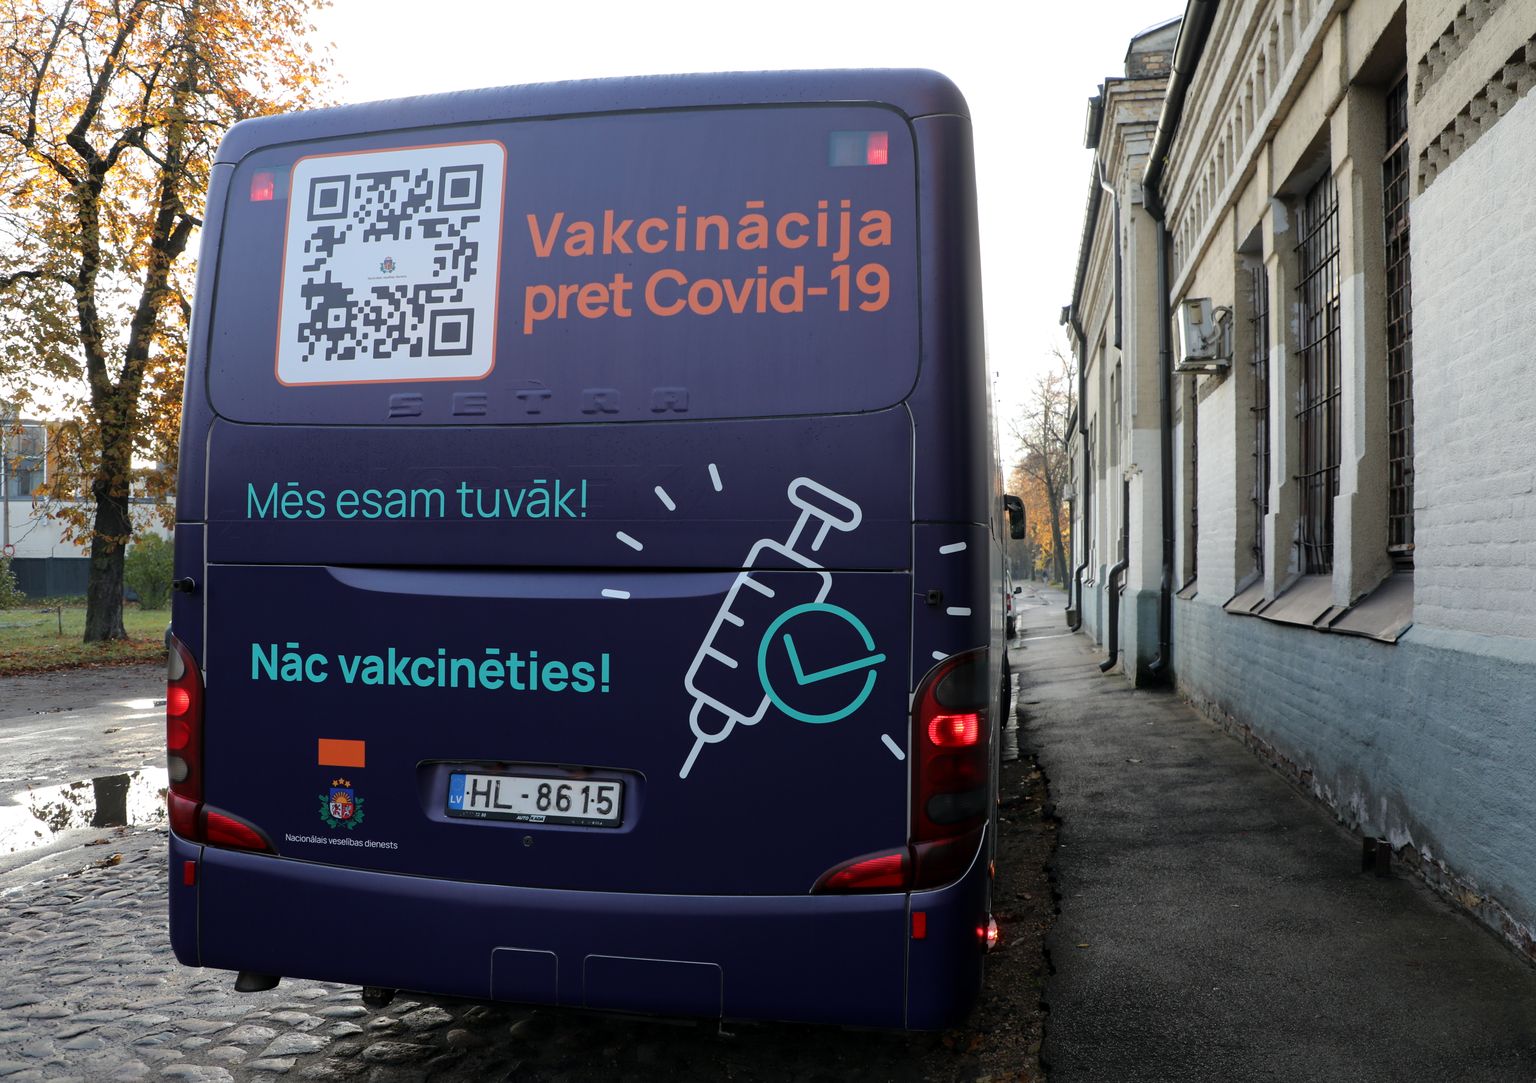 Автобус выездной вакцинации от Covid-19 на станции "Заусулаукс" в Риге